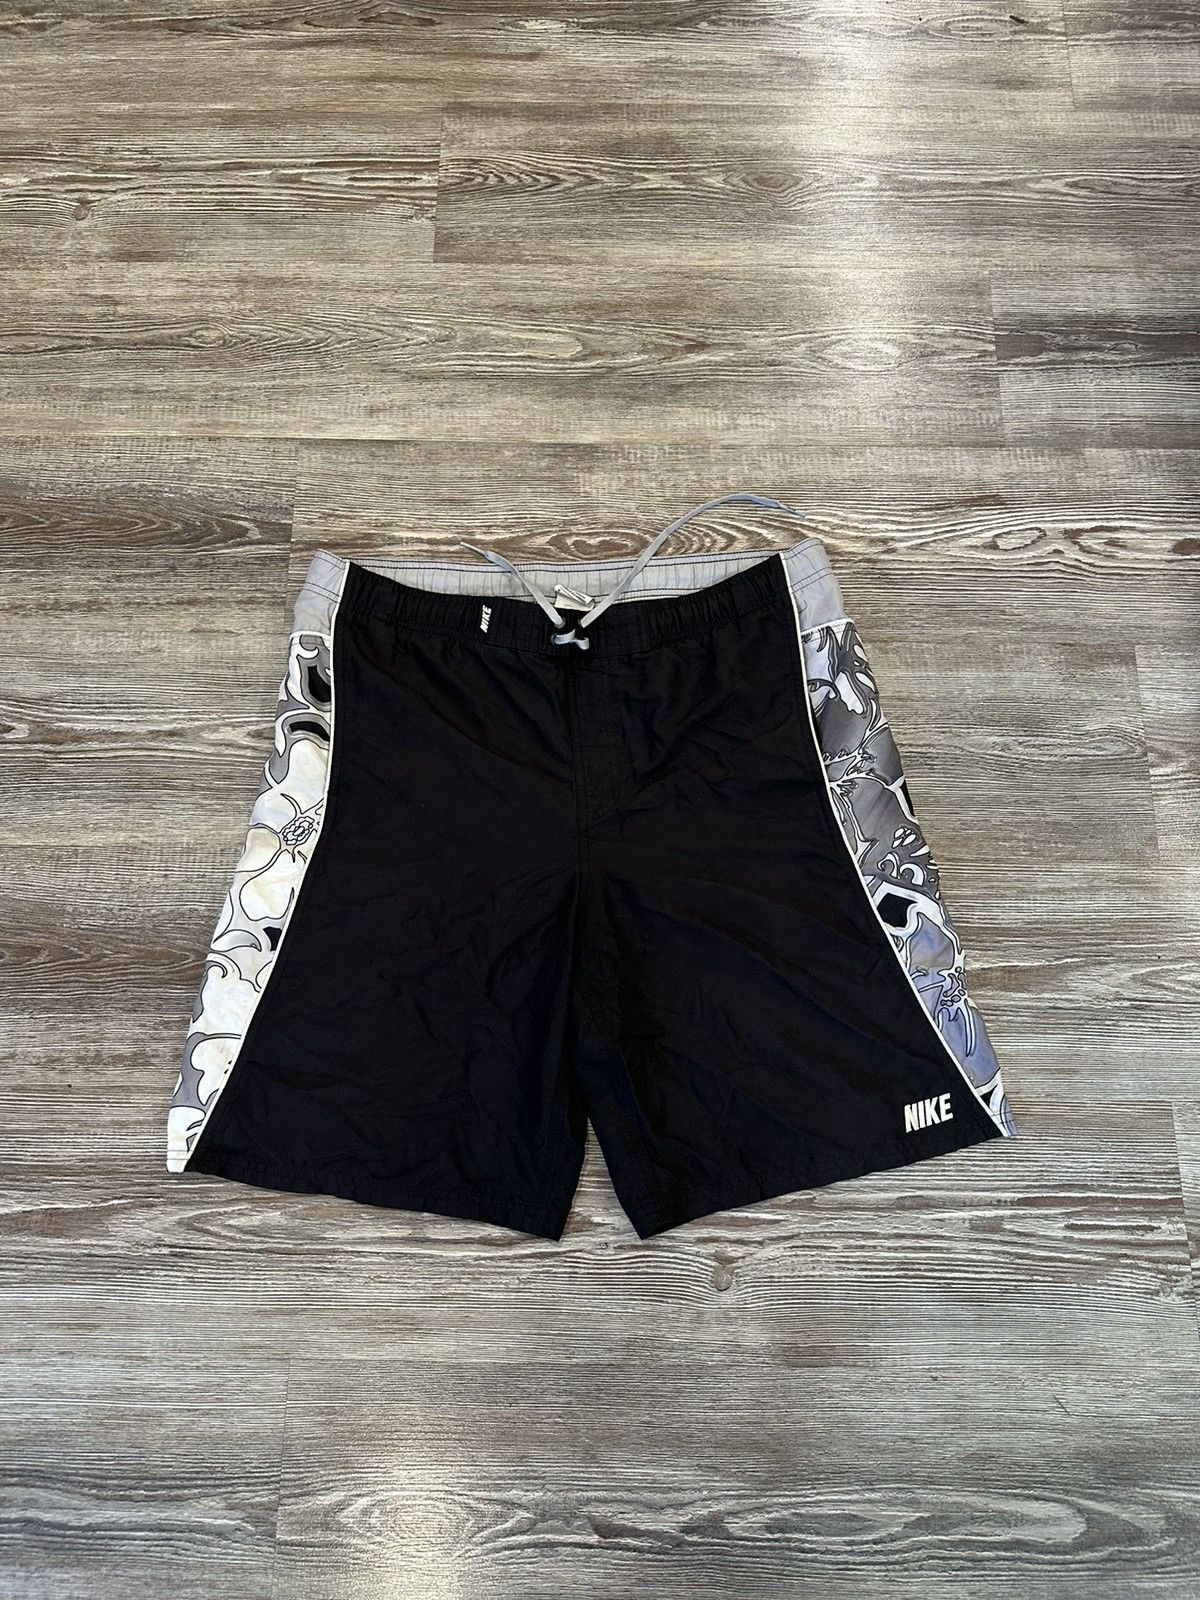 Nike Y2K Rare Nike Shorts | Grailed